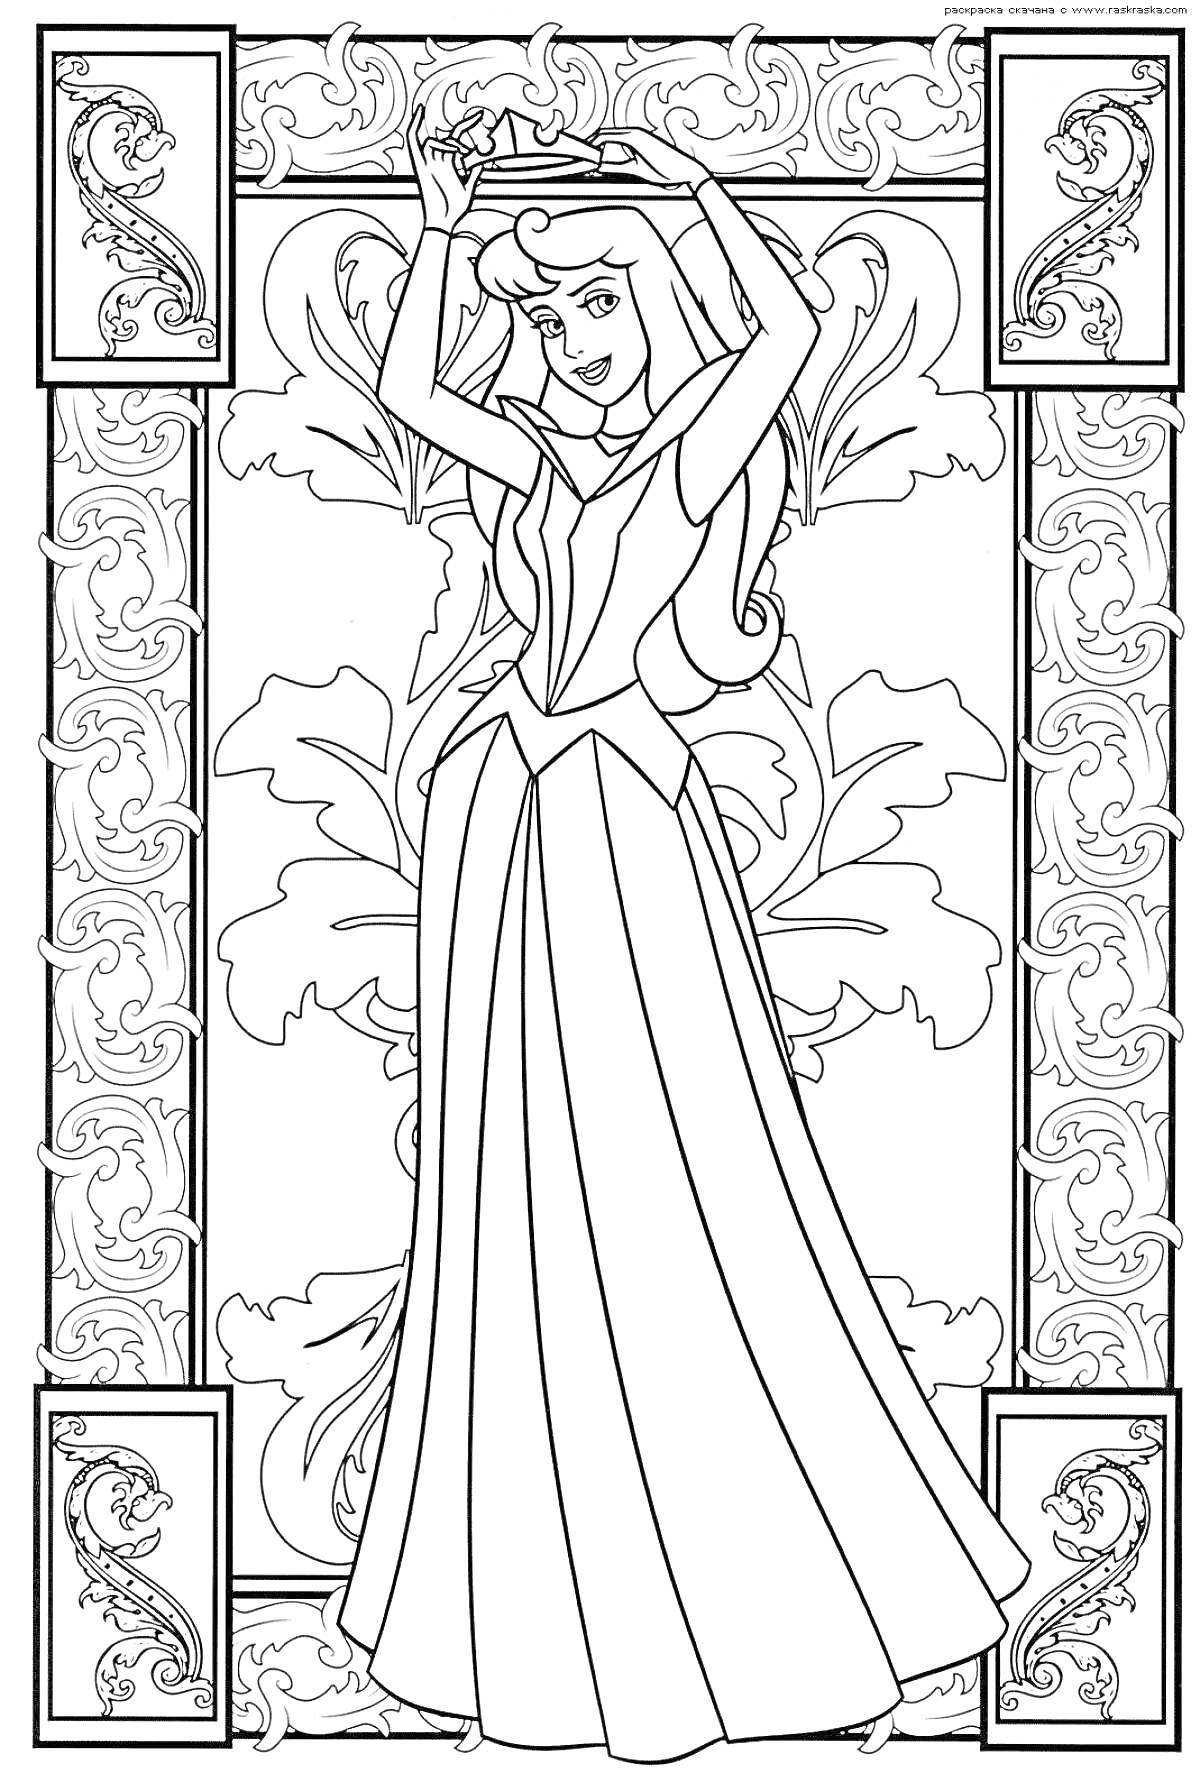 Раскраска Спящая красавица с короной, узорчатый фон, декоративные рамки